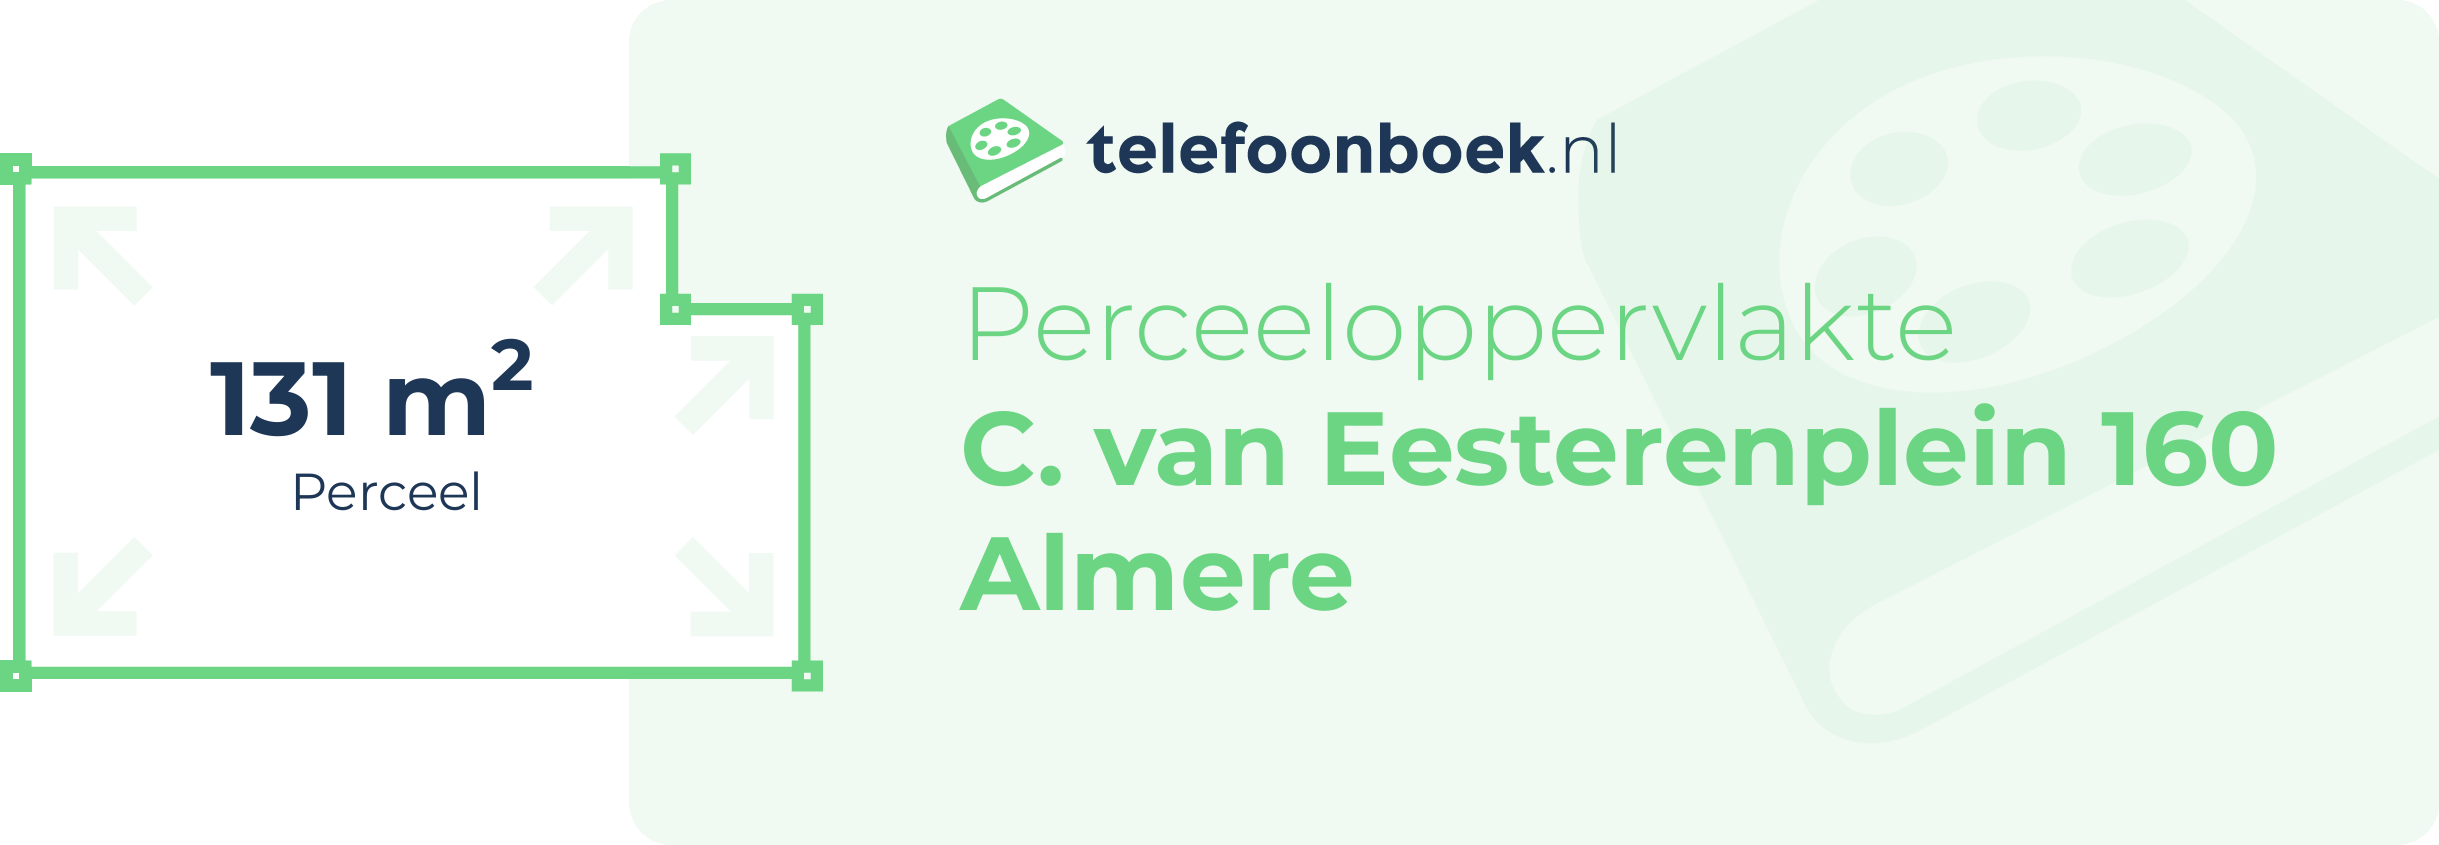 Perceeloppervlakte C. Van Eesterenplein 160 Almere